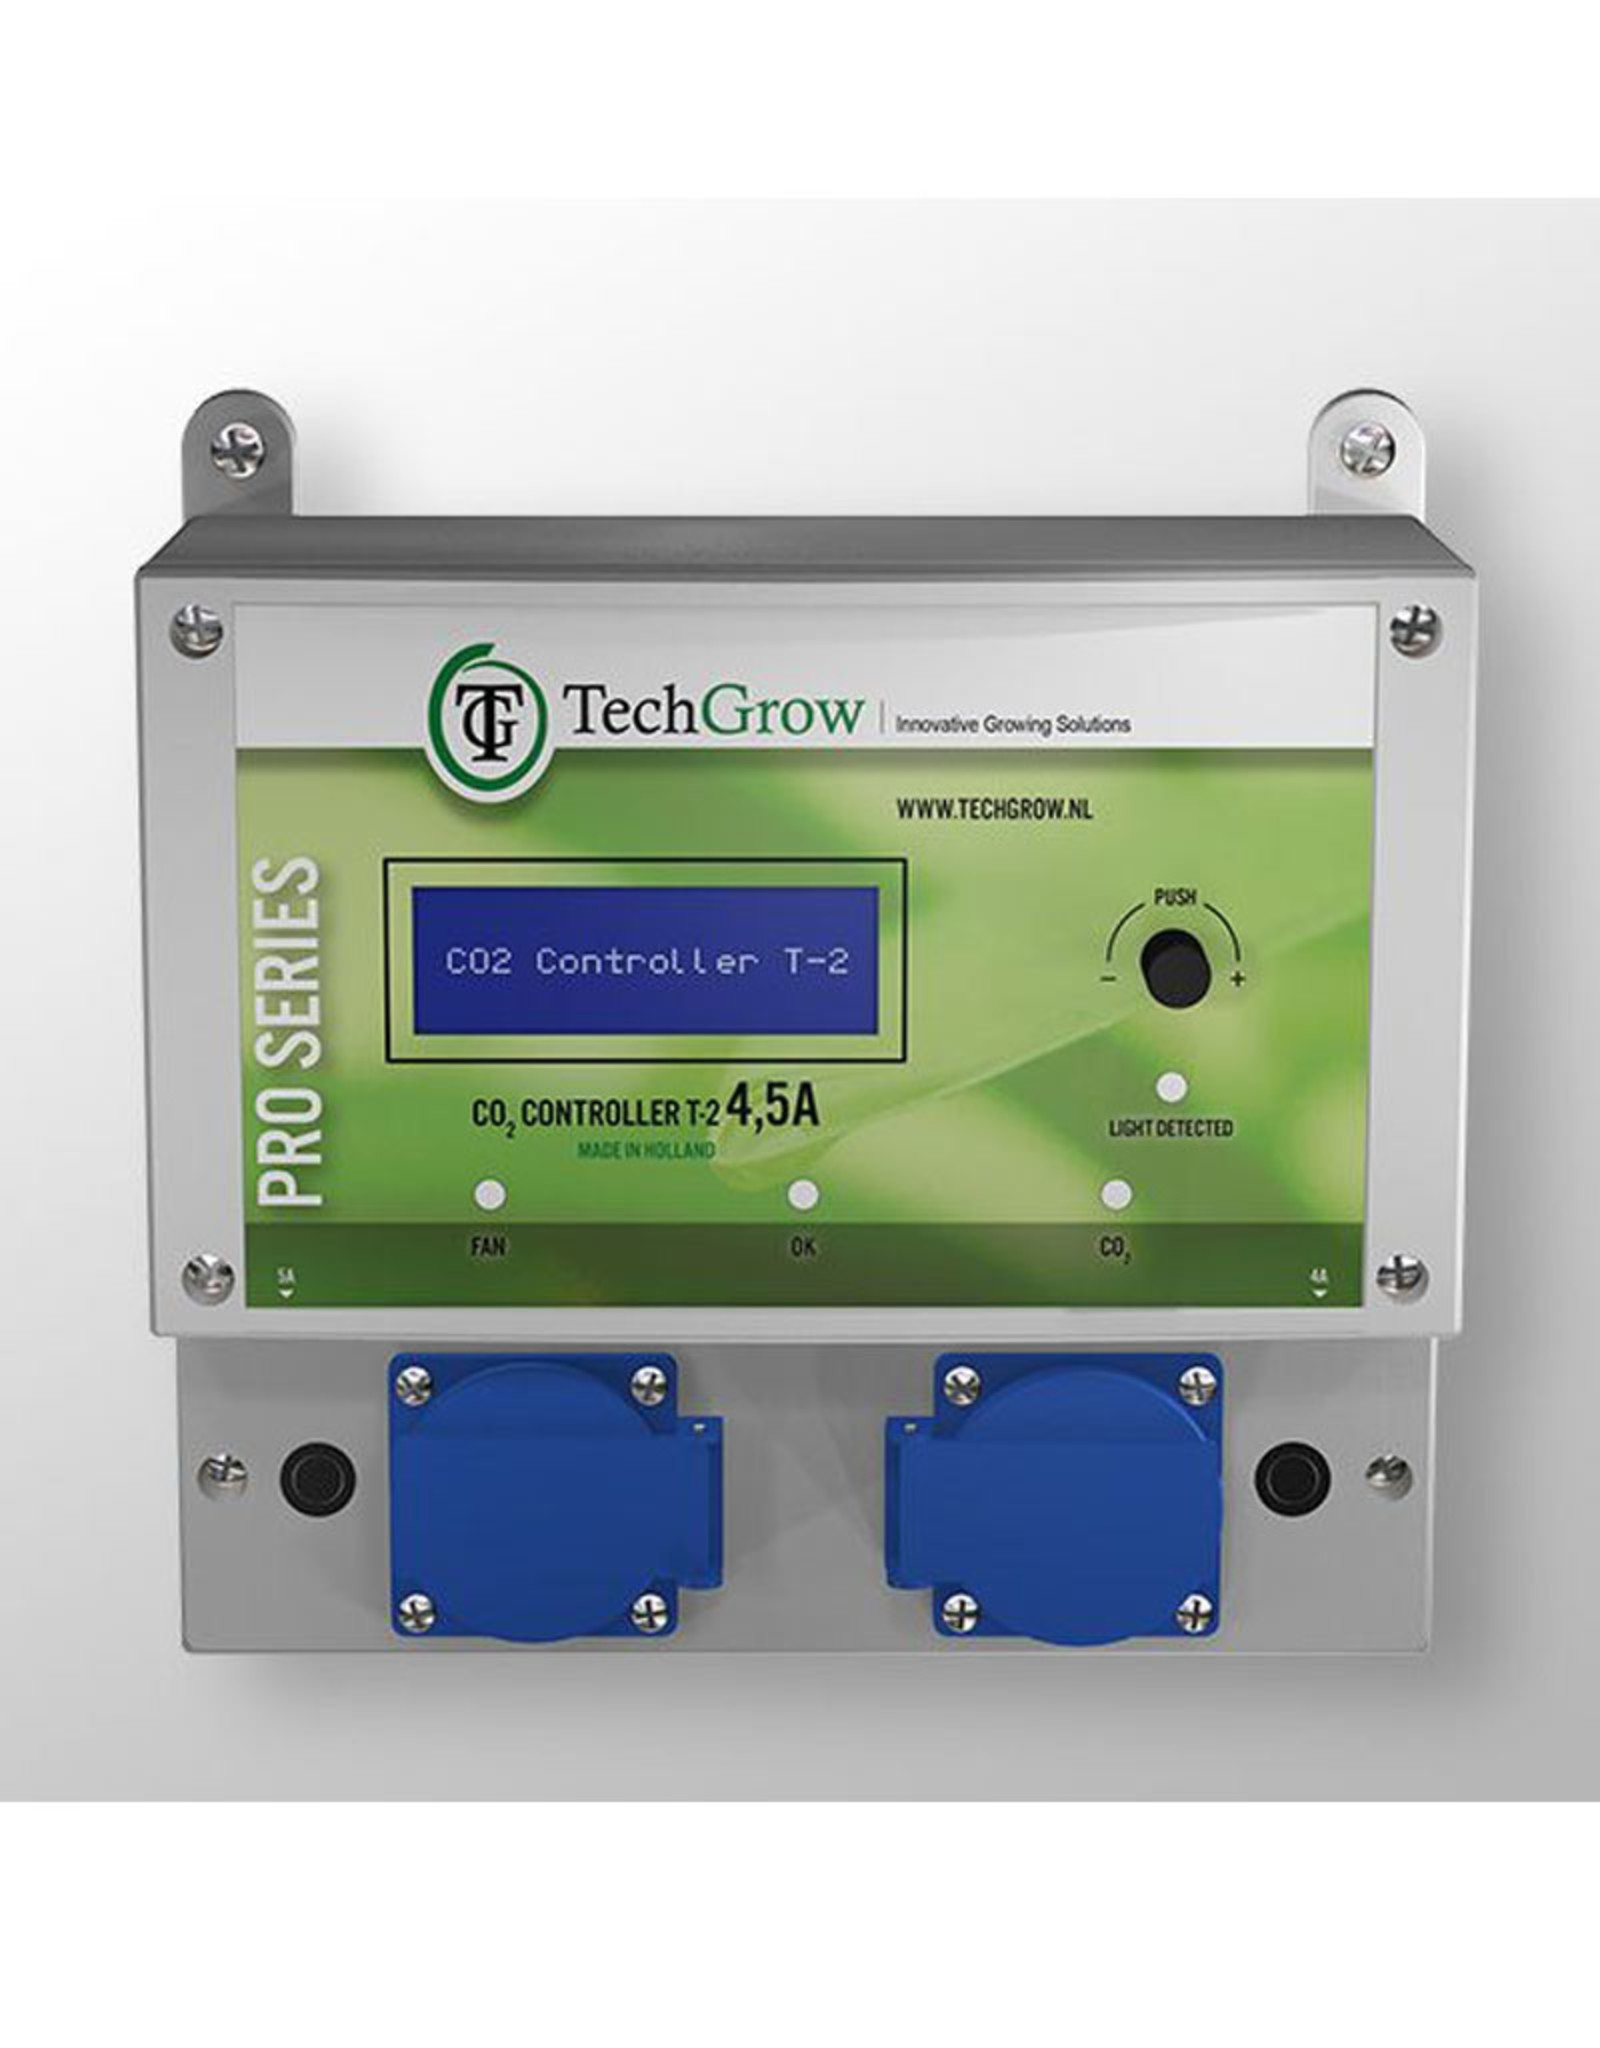 TechGrow TECHGROW T2 PRO CO2 CONTROLLER EXCL SENSOR 4,5A - 7A - 14A